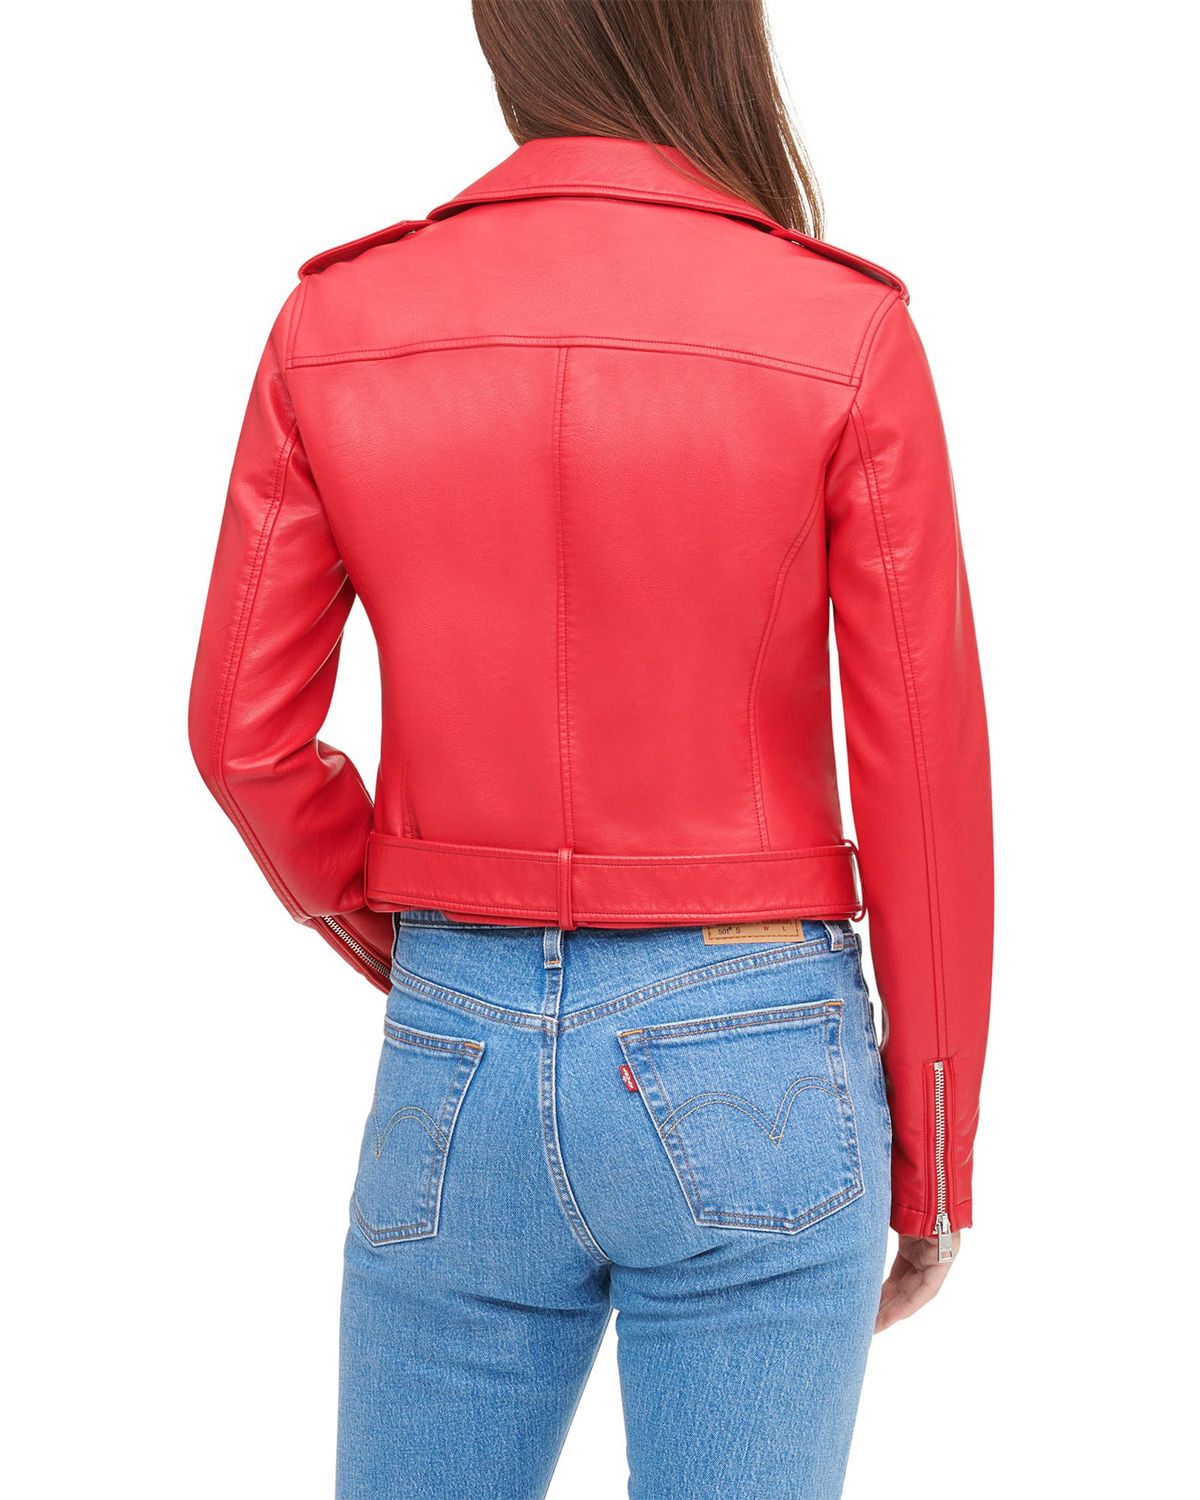 Womens Short Red Biker Leather Jacket | Elite Jacket